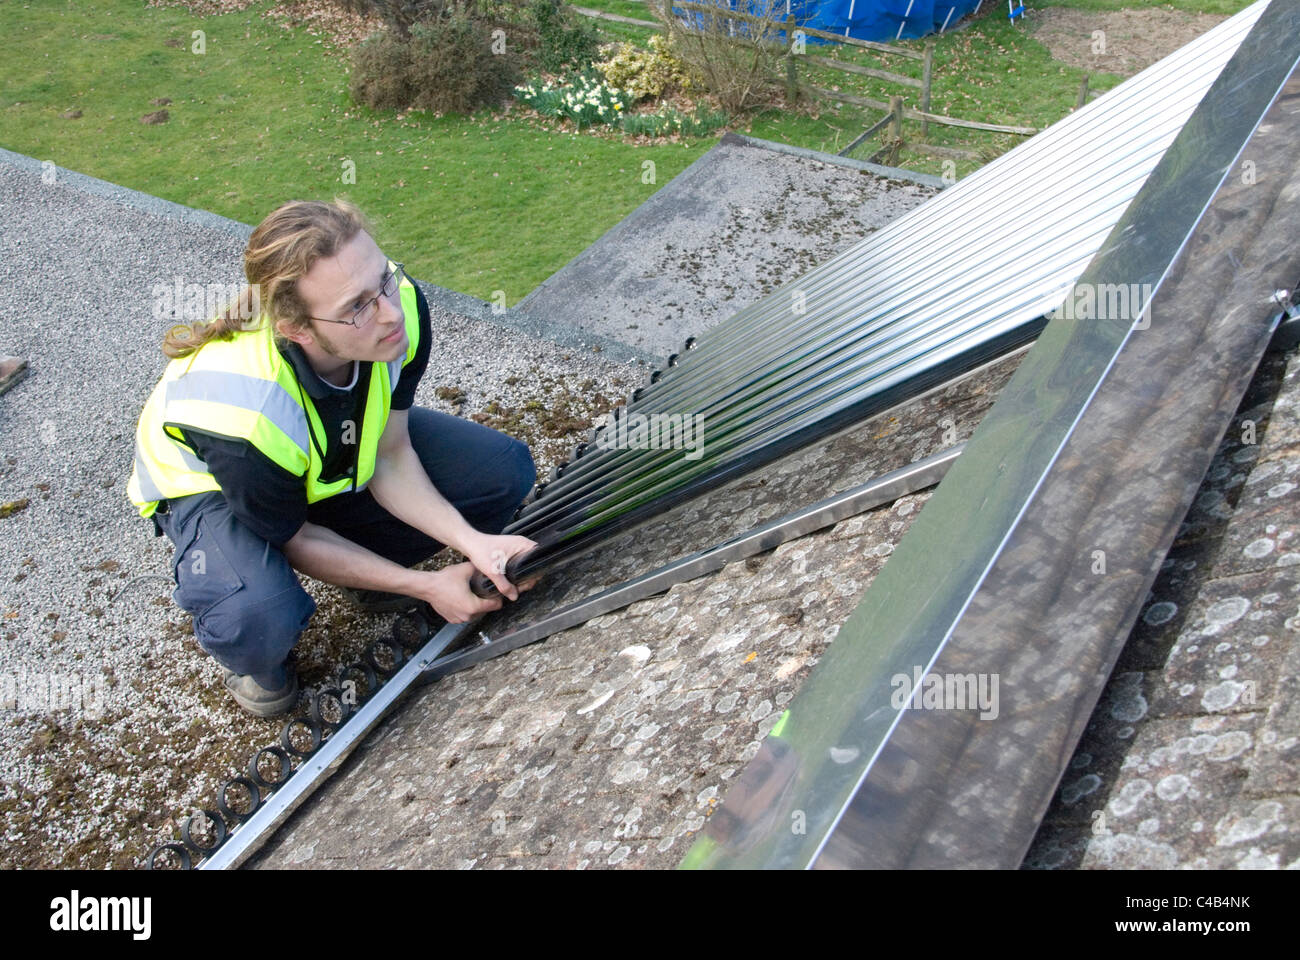 Ingenieure, die Installation solar thermische evakuierten Röhre Array auf dem Dach eines inländischen Hauses Erneuerbare Wärme und Warmwasser Stockfoto